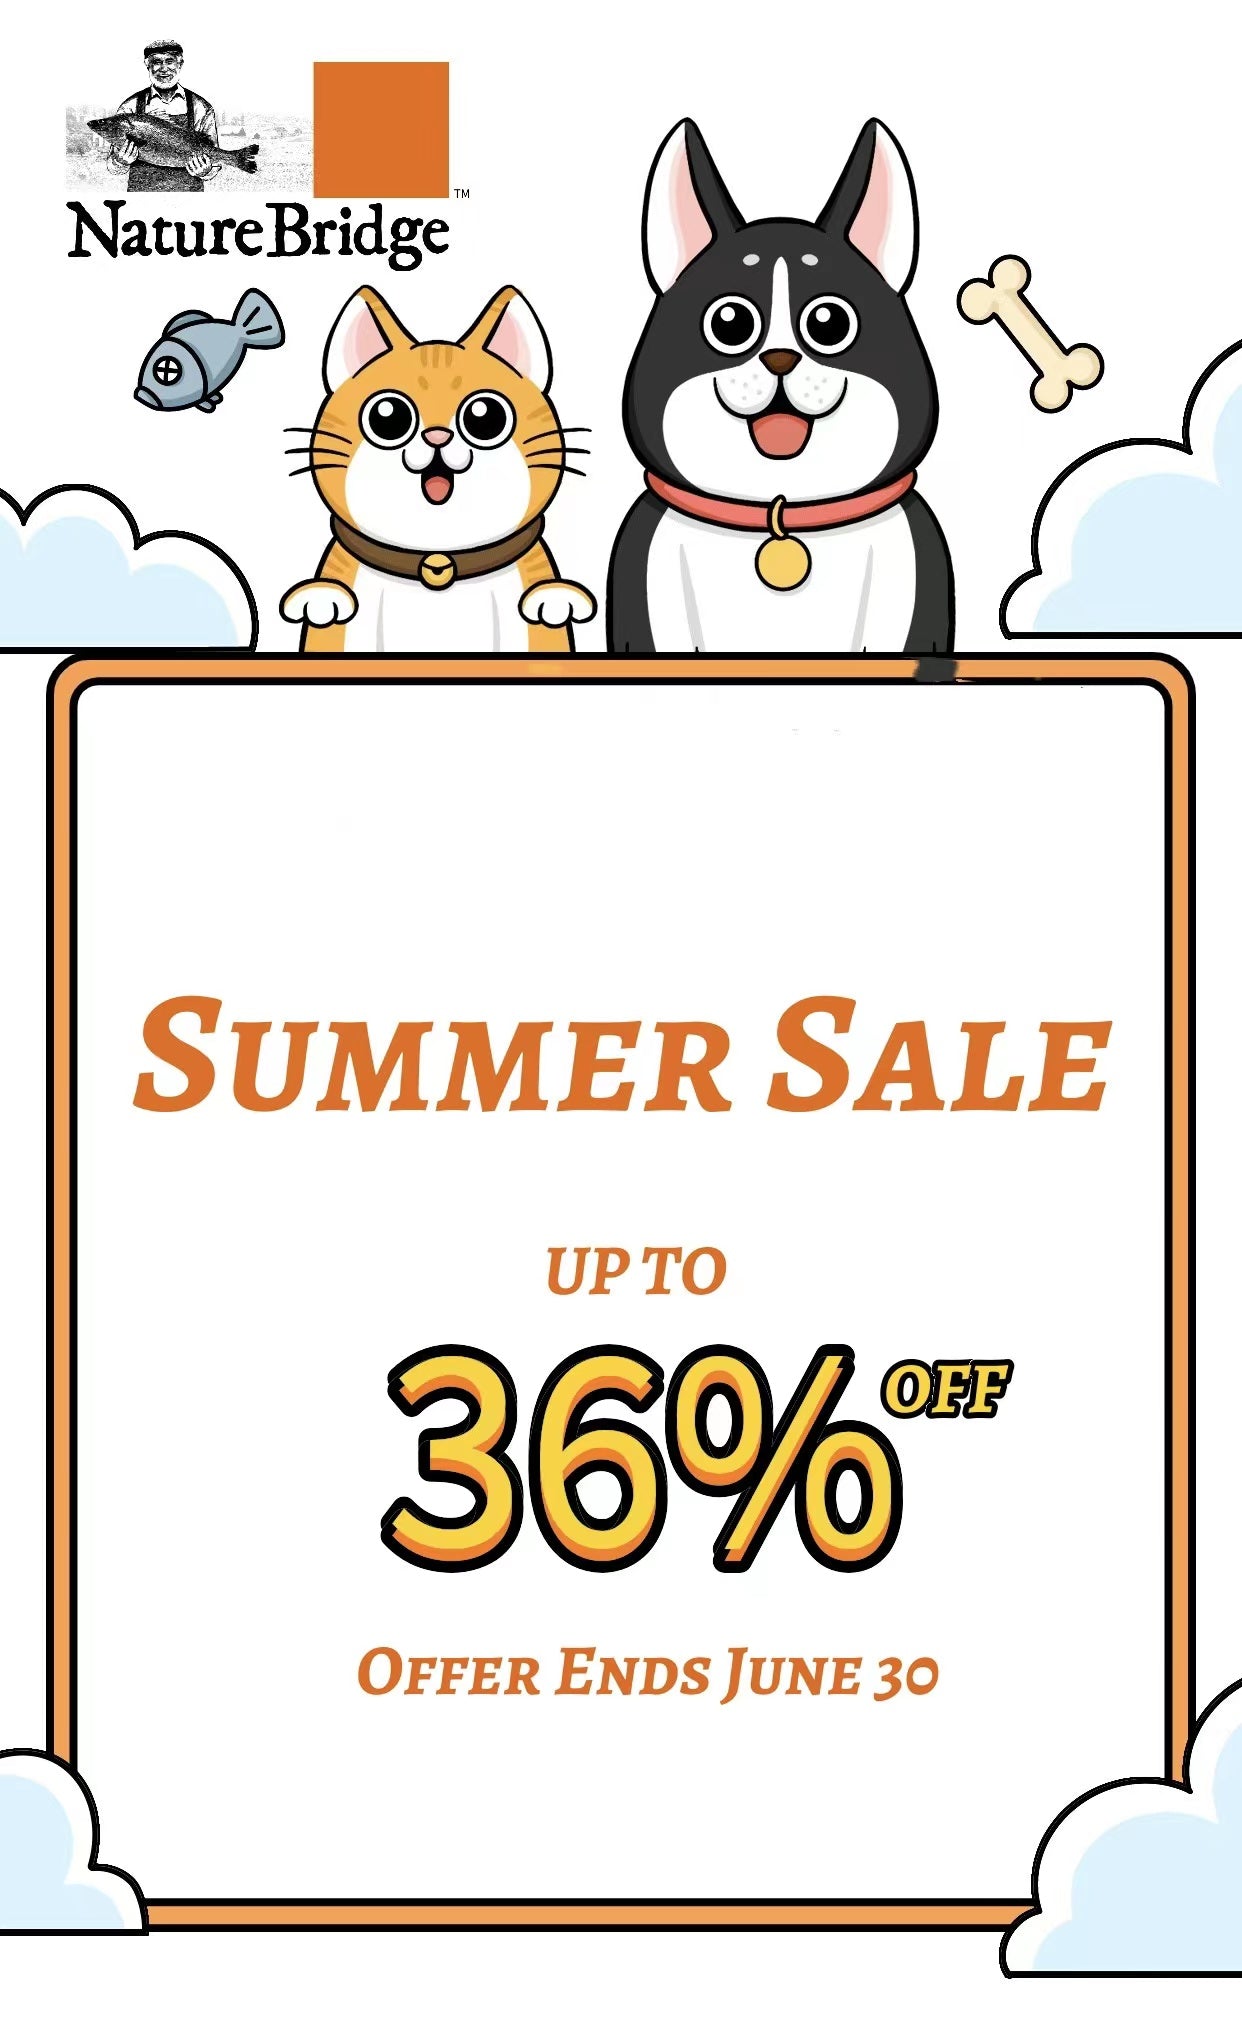 NatureBridge- Summer Sale up to 36% off